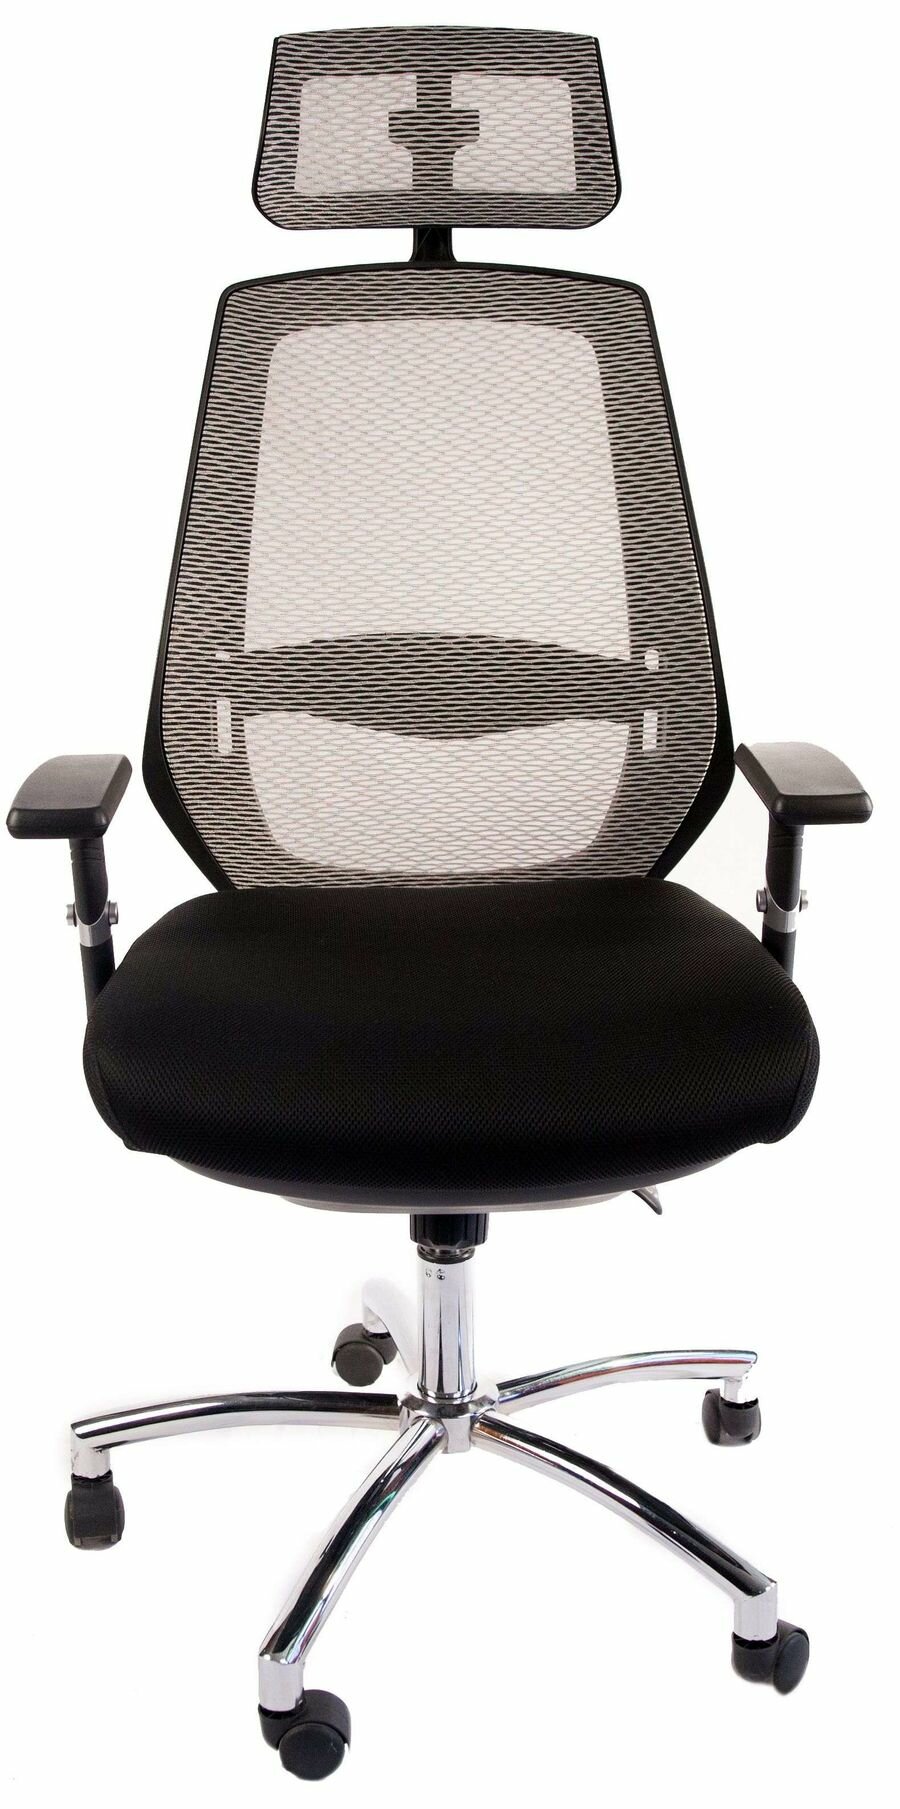 Кресло для руководителя Поинтекс Rhombus обивка: текстиль цвет: Черный